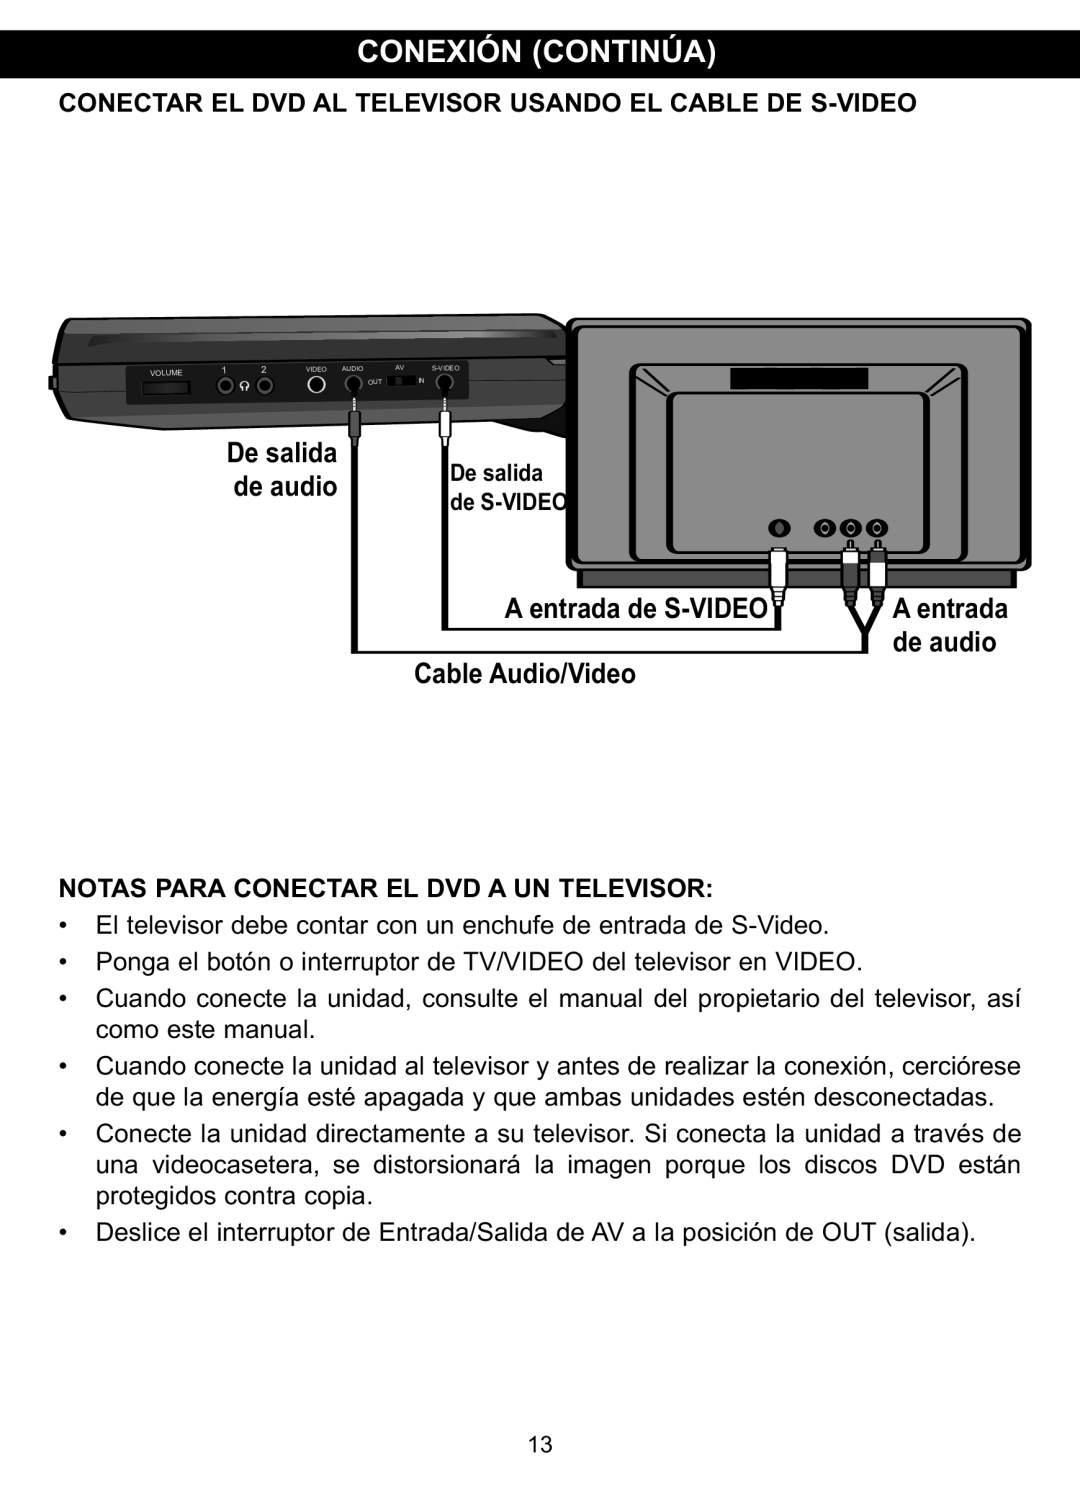 Memorex MVDP1088 manual Conexión Continúa, Conectar El Dvd Al Televisor Usando El Cable De S-Video, De salida de audio 